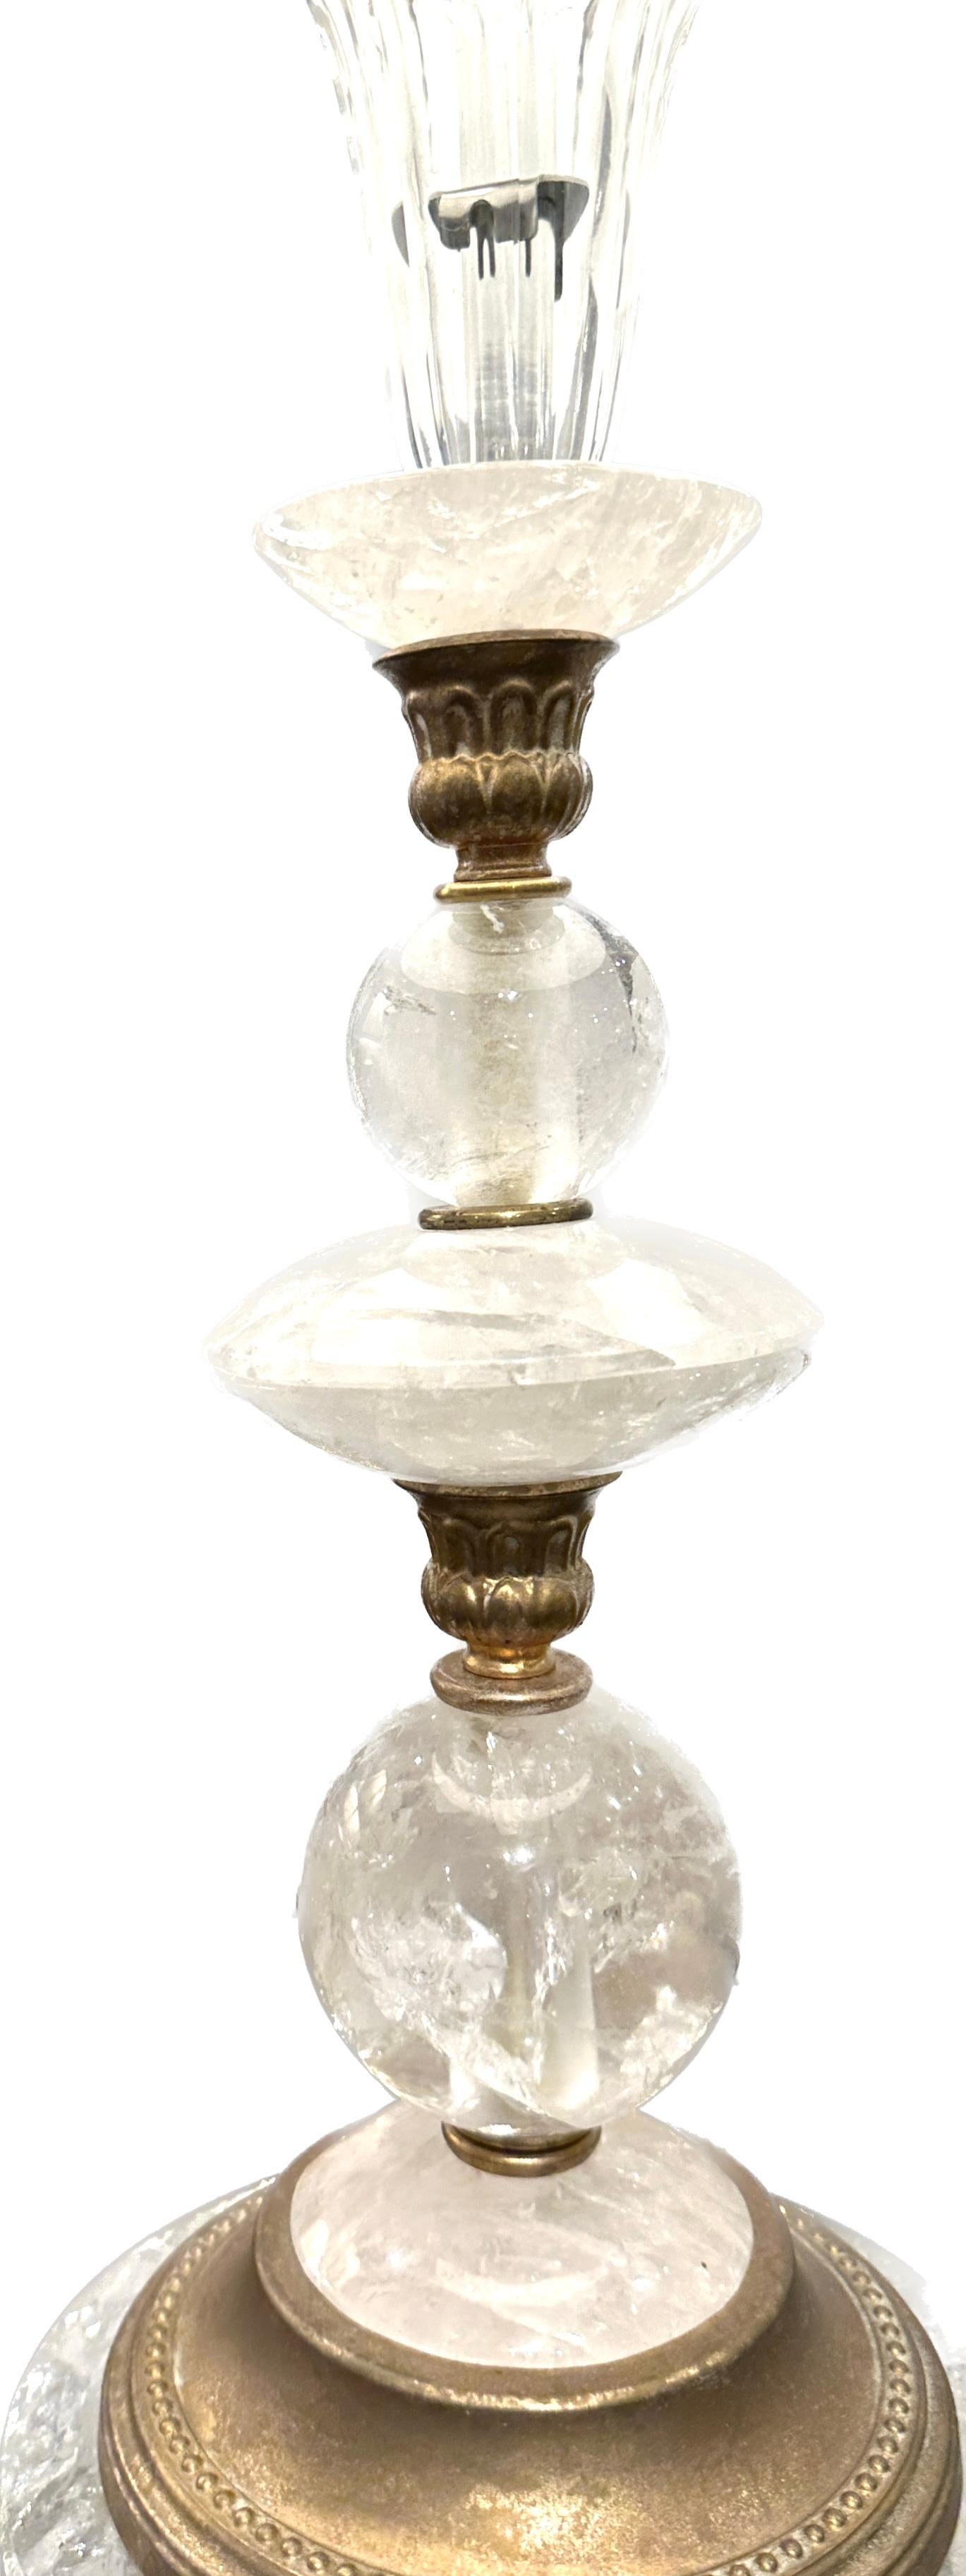 Lampe de table vintage en cristal de roche avec base ronde dorée, espacée de garnitures décoratives en métal doré.  Fini avec un embout en cristal de roche.
17